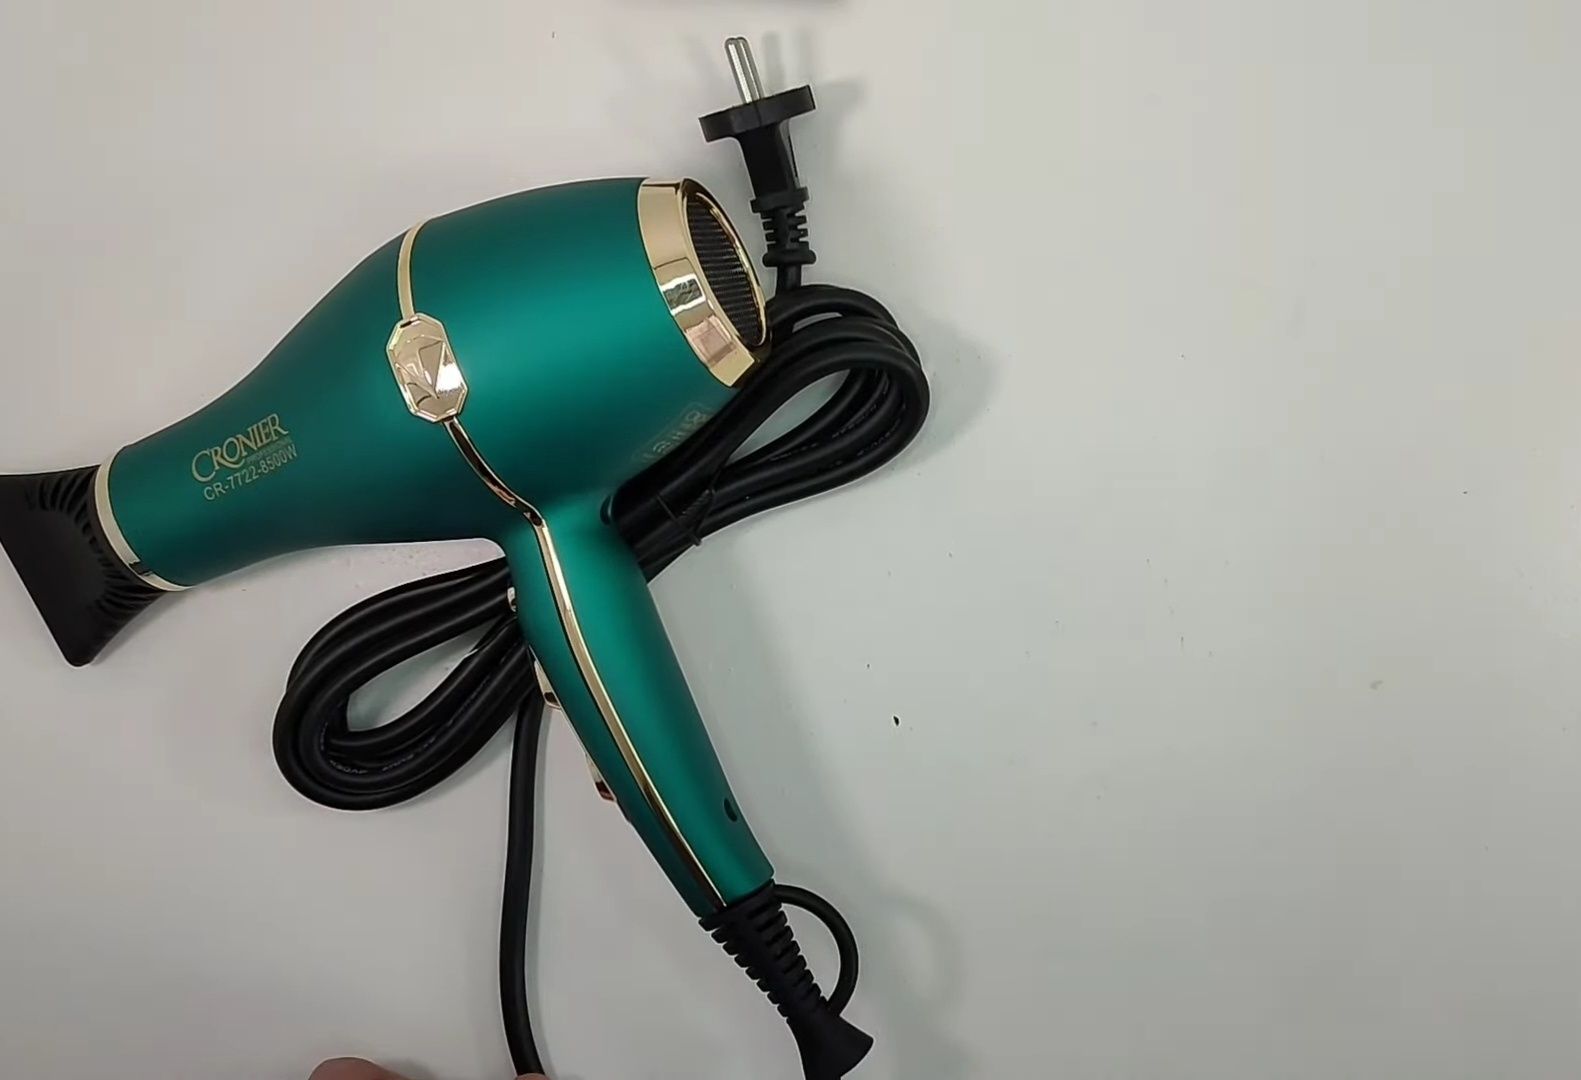 Фен для волос сушка электрическая укладка прически Доставка по РК